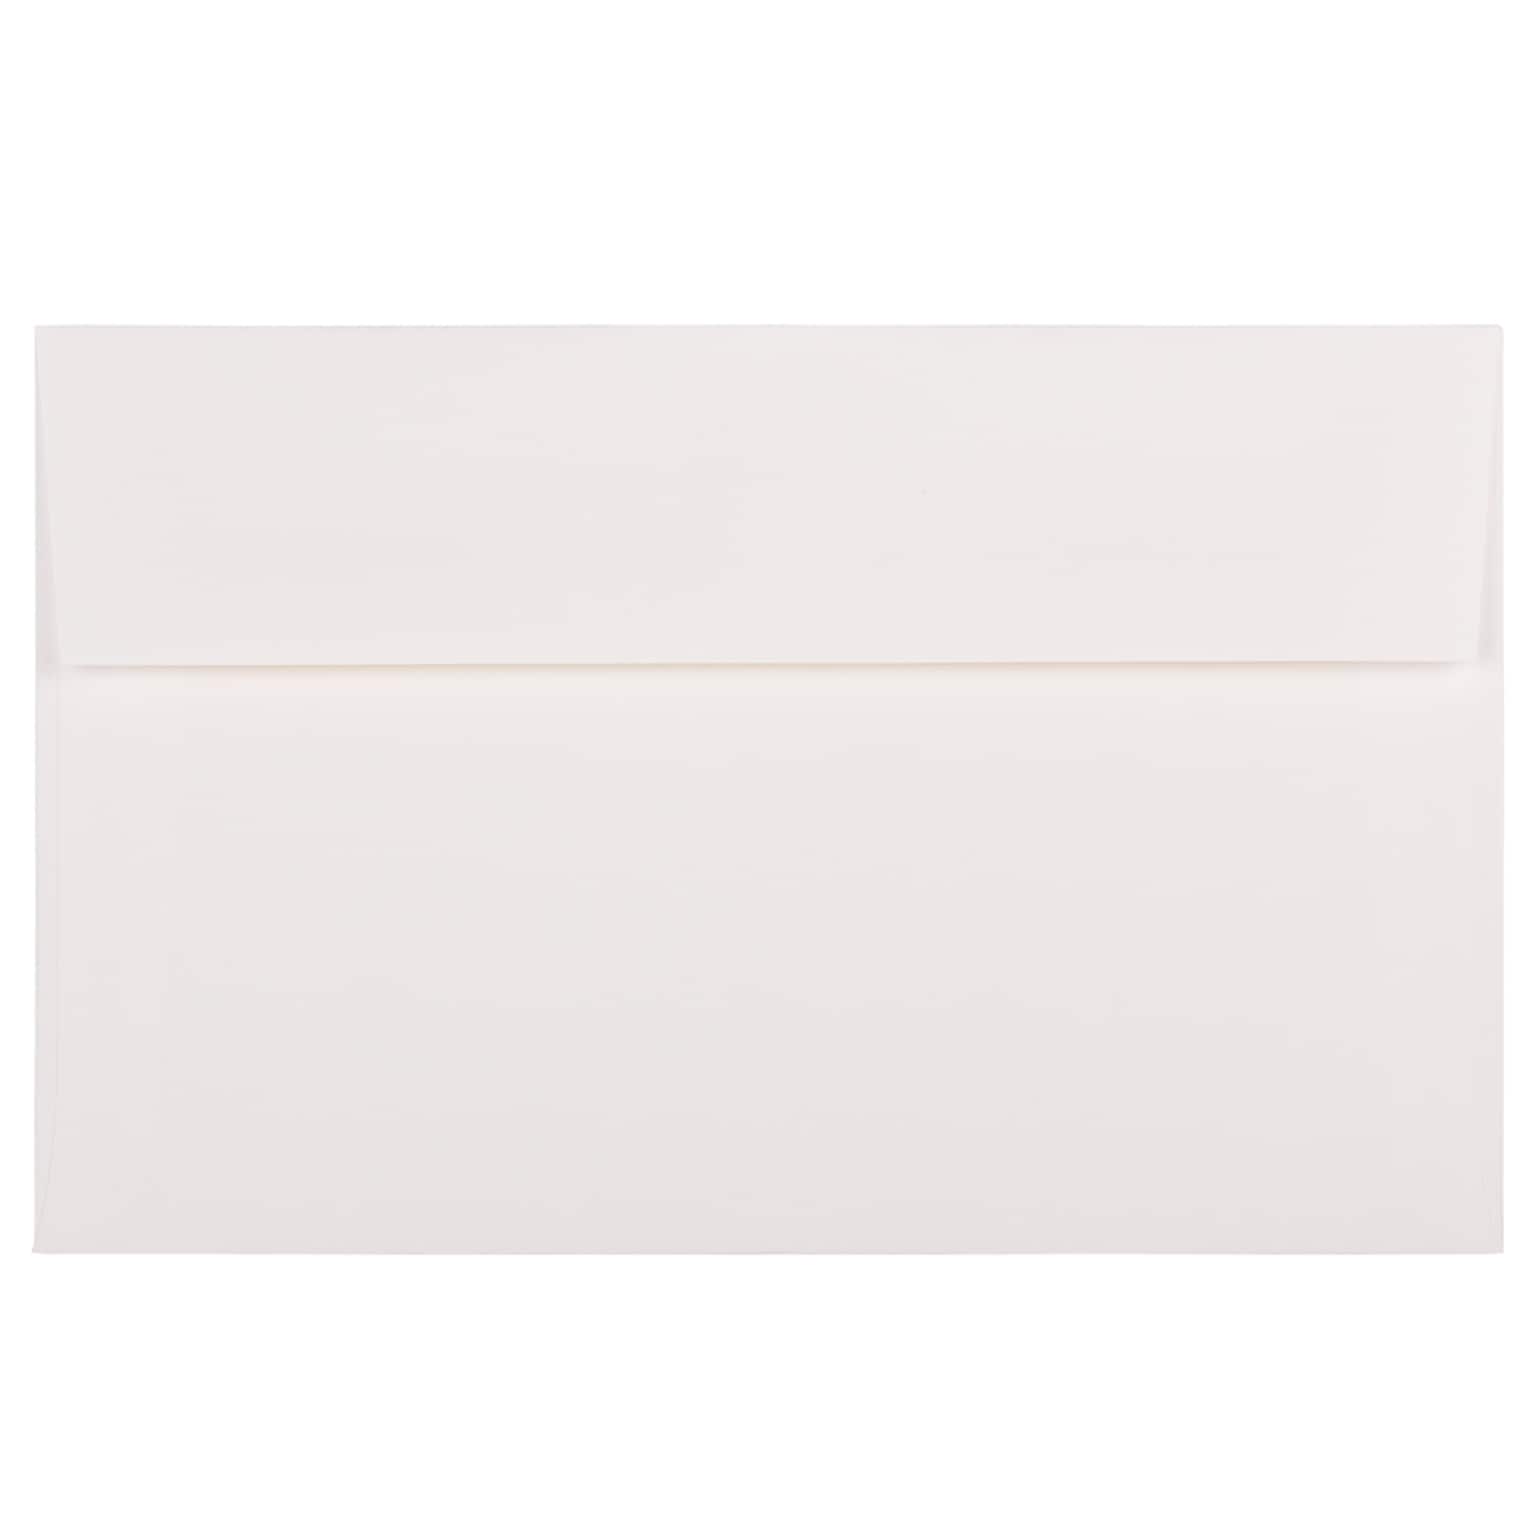 JAM Paper A10 Strathmore Invitation Envelopes, 6 x 9.5, Bright White Linen, 25/Pack (93453)